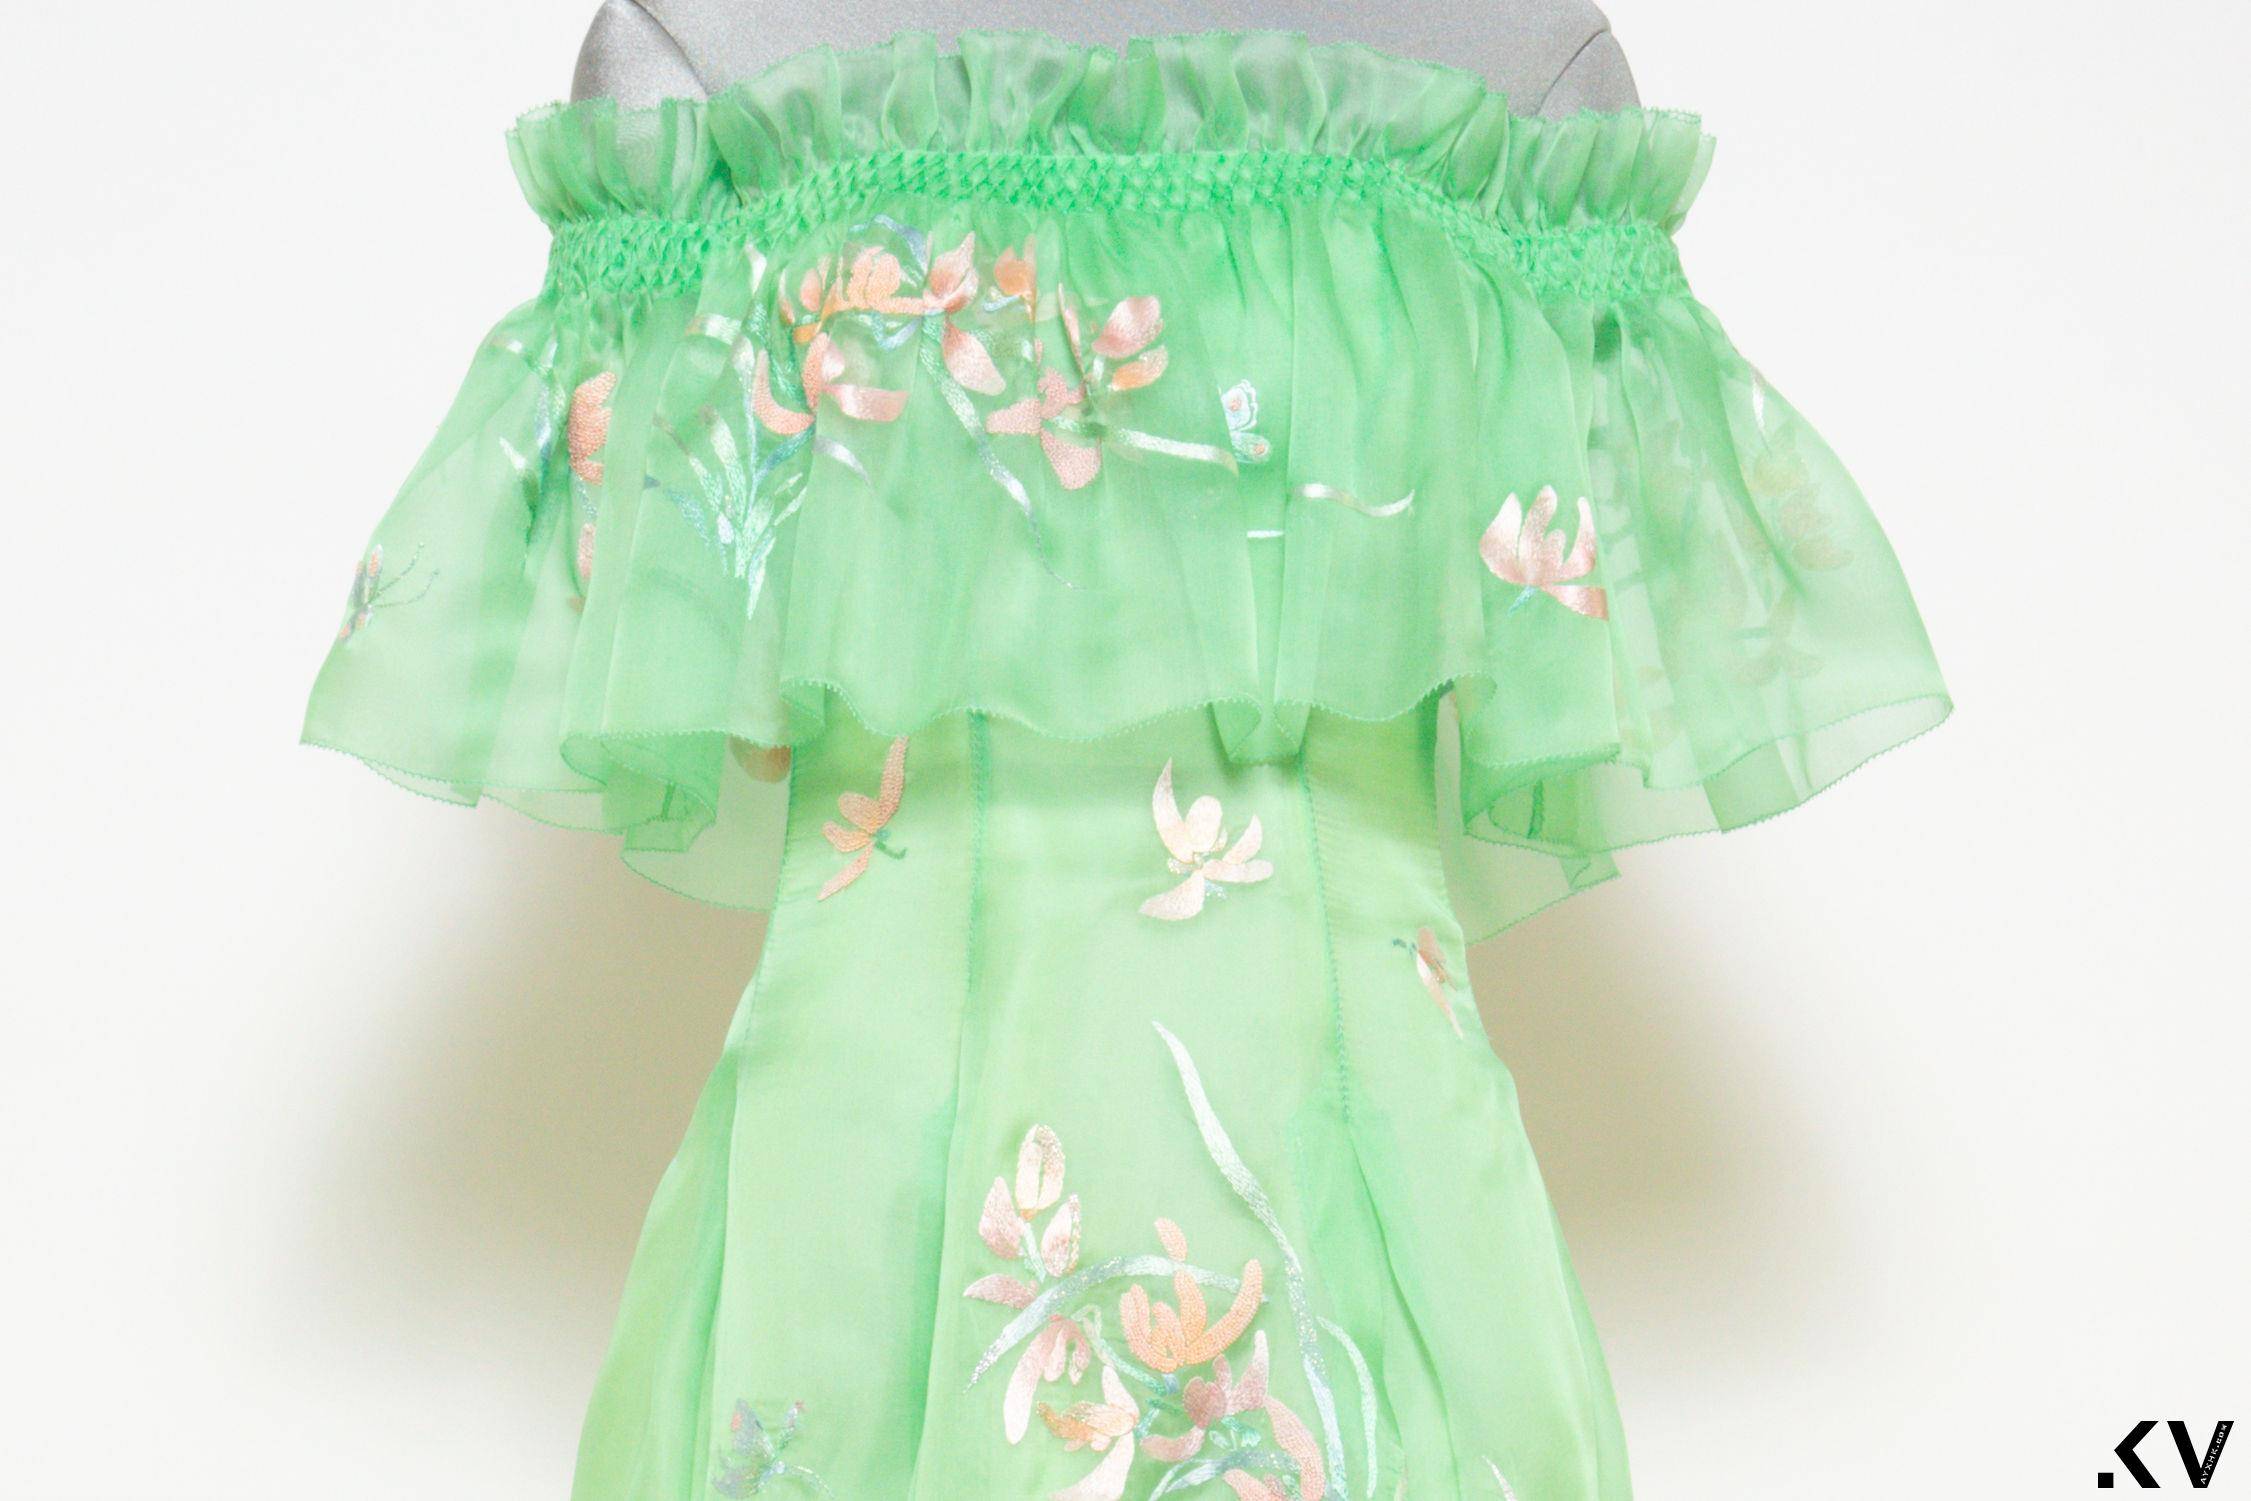 杨紫琼婚宴2套礼服来自夏姿！　量身打造最爱的绿色系、兰花图腾藏深意 名人名流 图4张